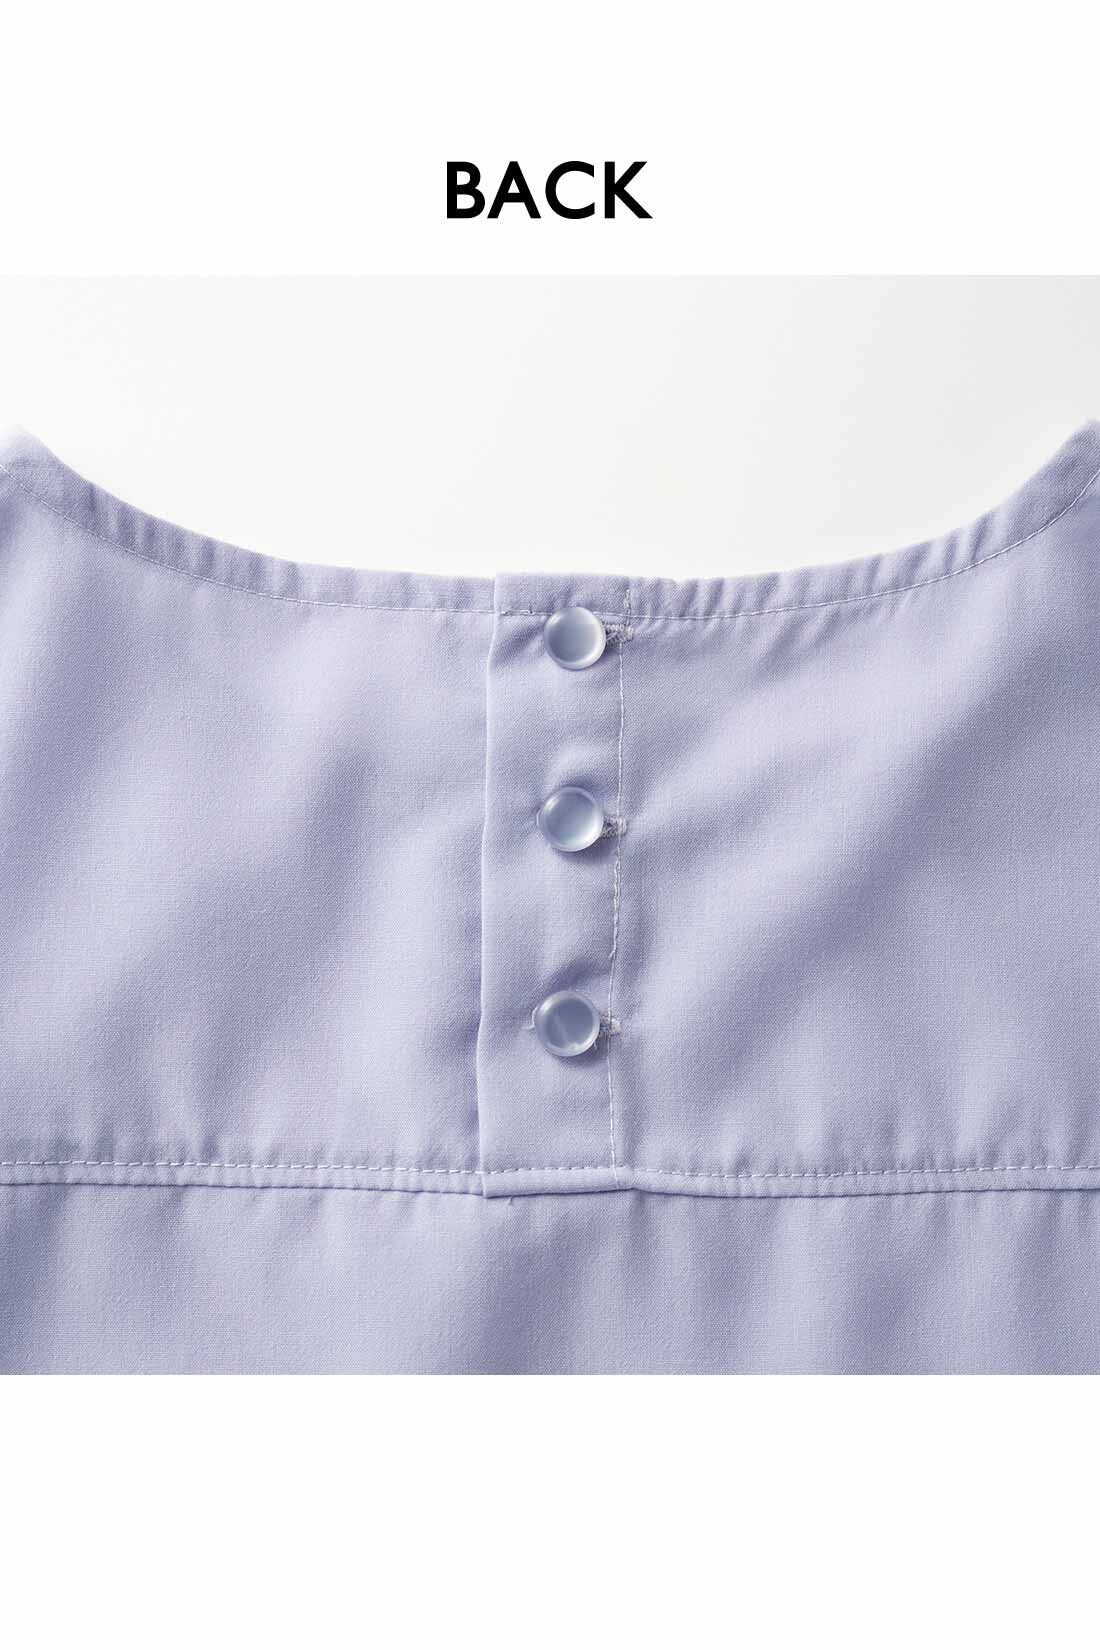 Real Stock|IEDIT[イディット]　ヴィンテージ風スパンローン素材のしわが気になりにくいシャツライクトップス〈パープル〉|背中のボタンは、デザインポイントにも。ヨークでシャツのきちんと感もプラス。